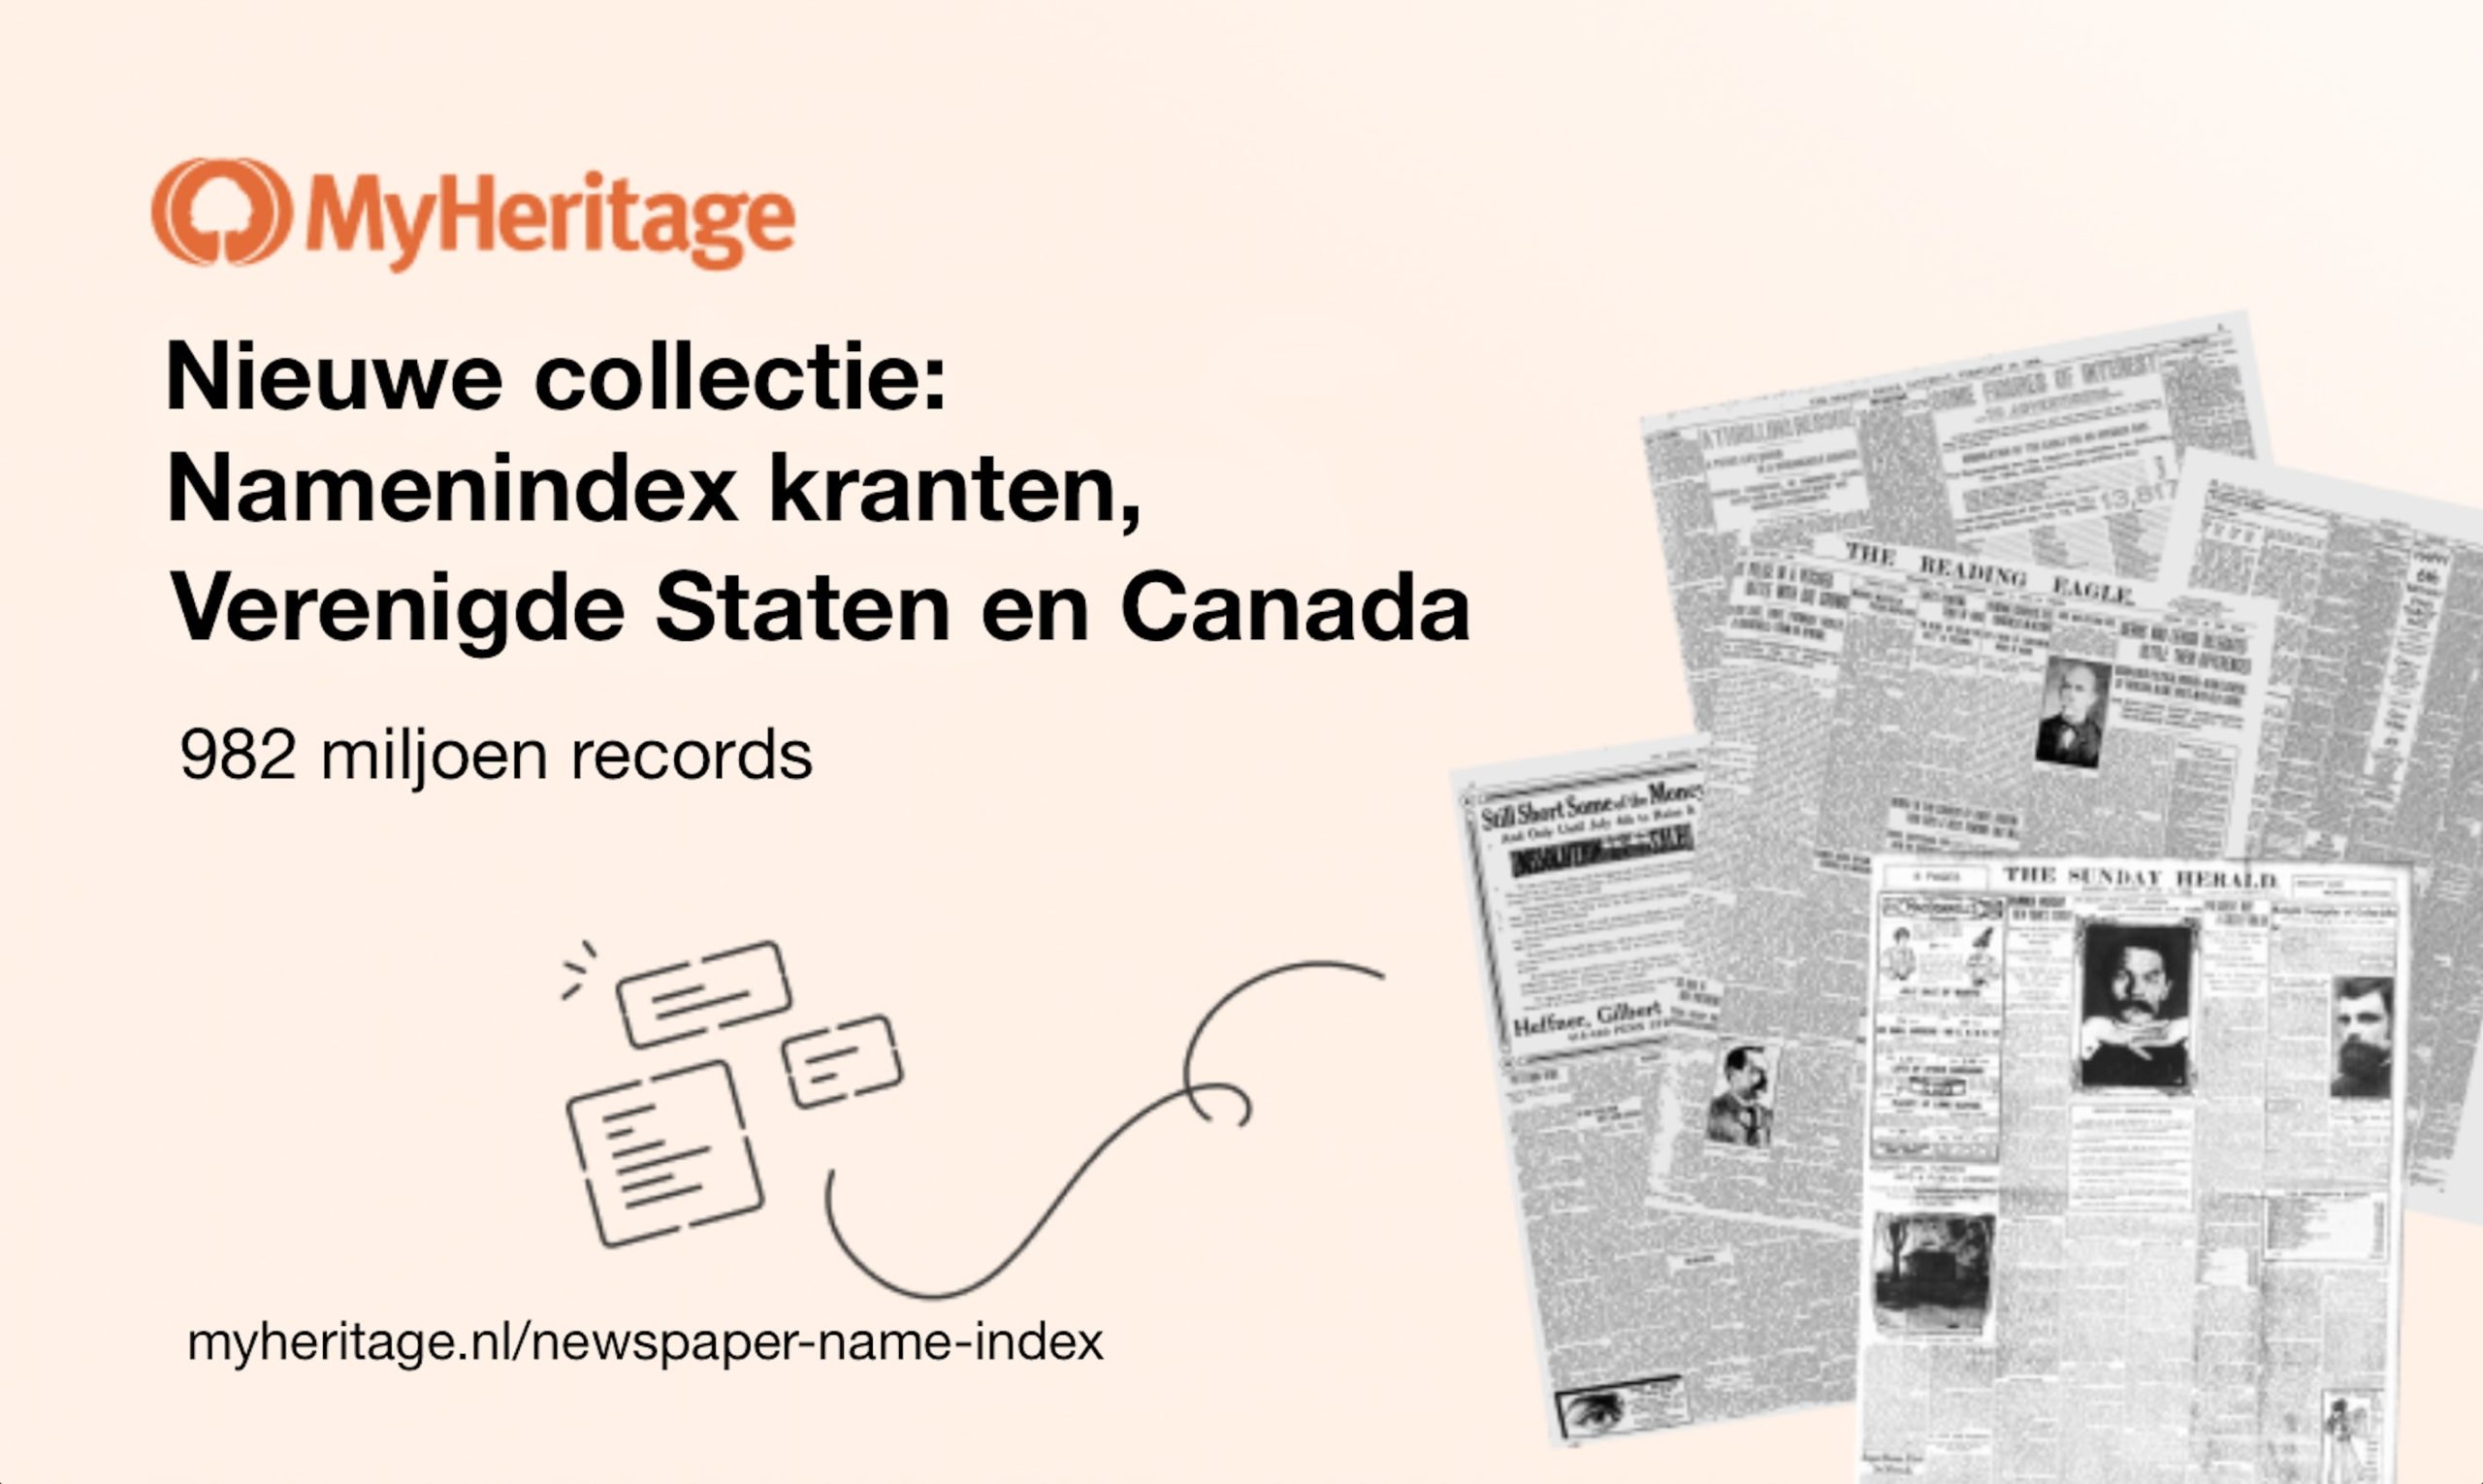 MyHeritage publiceert een nieuwe namenindex voor vermeldingen in historische Amerikaanse en Canadese kranten, met bijna een miljard namen